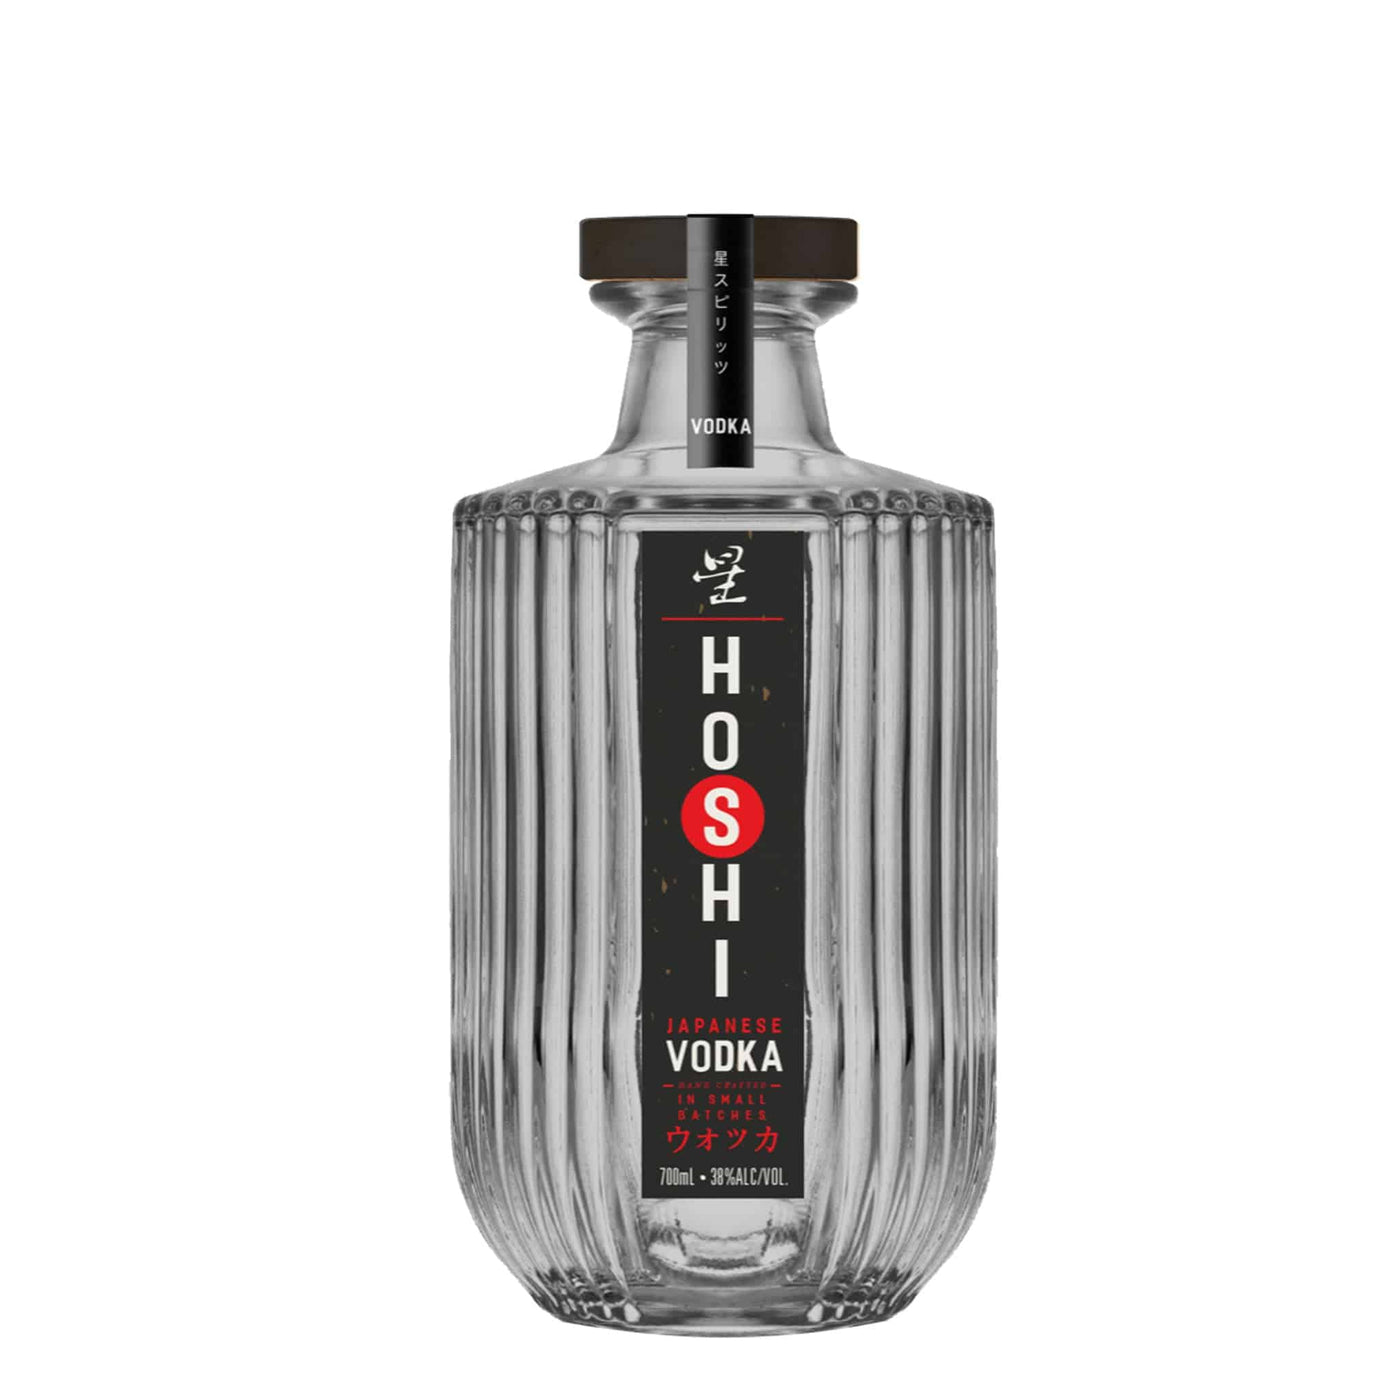 Hoshi Vodka - Spiritly